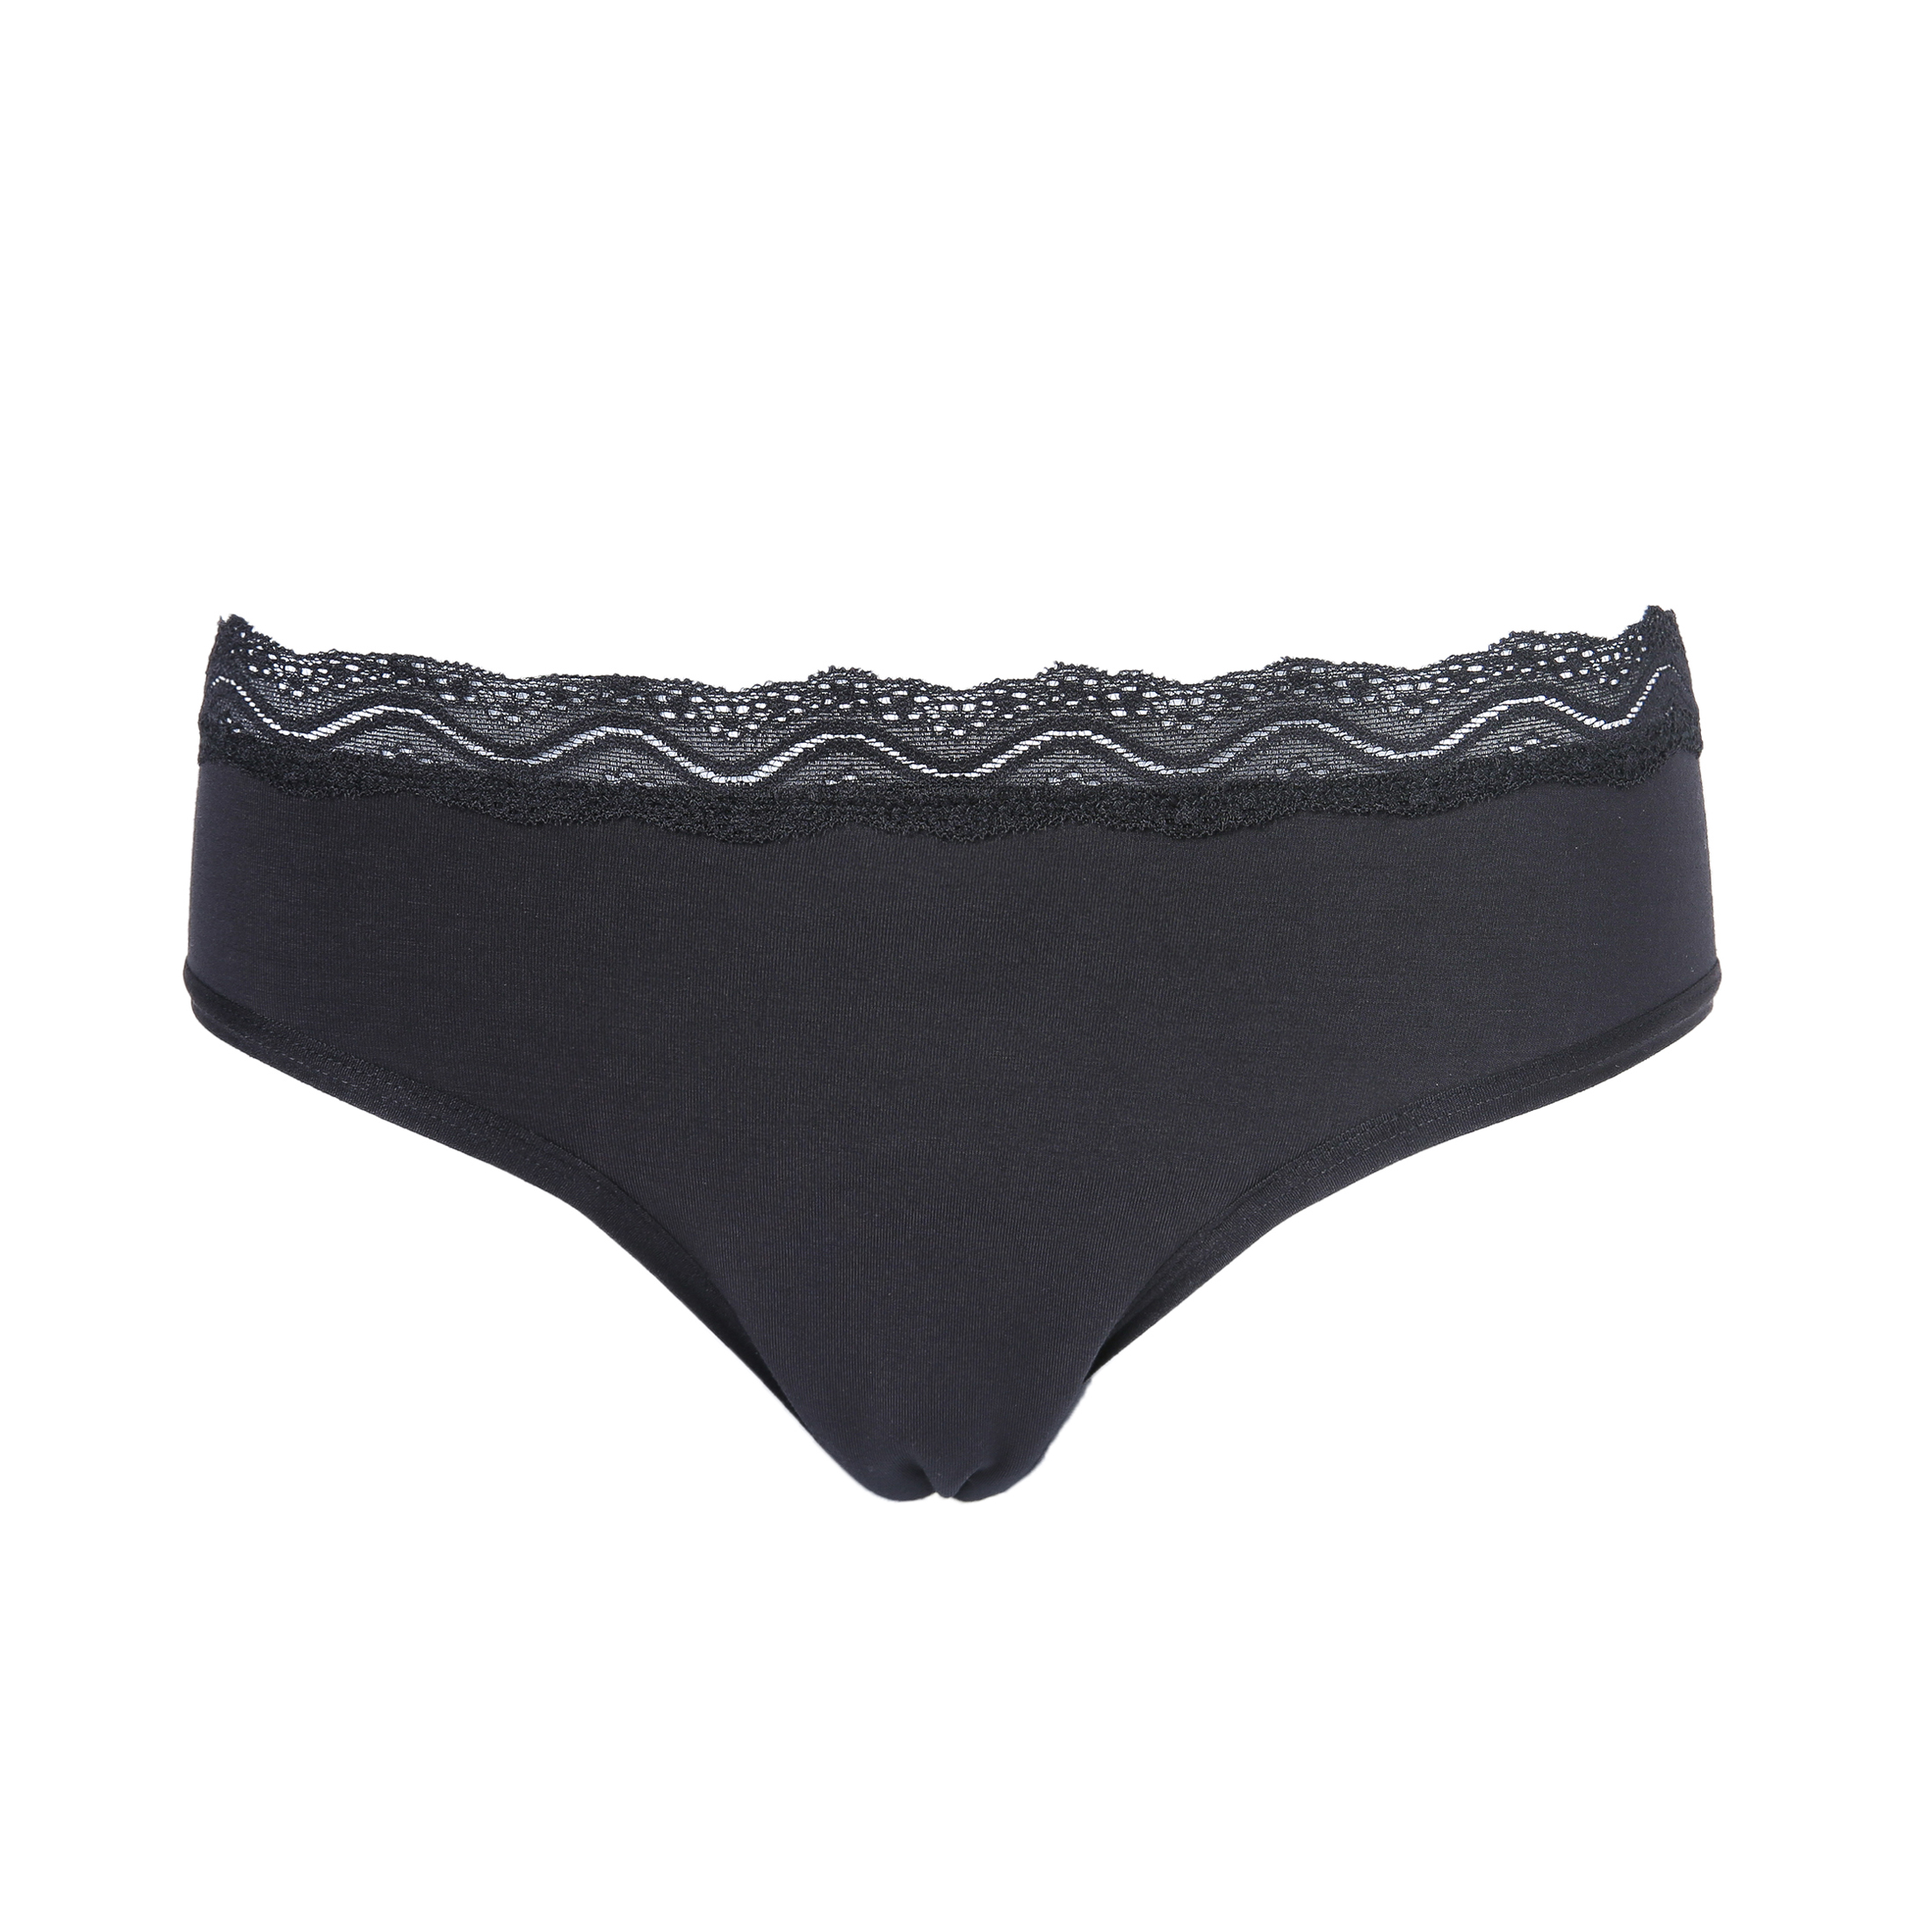 Wholesale Custom leak proof period panties safety underwear sustainable waterproof herbal panty liner